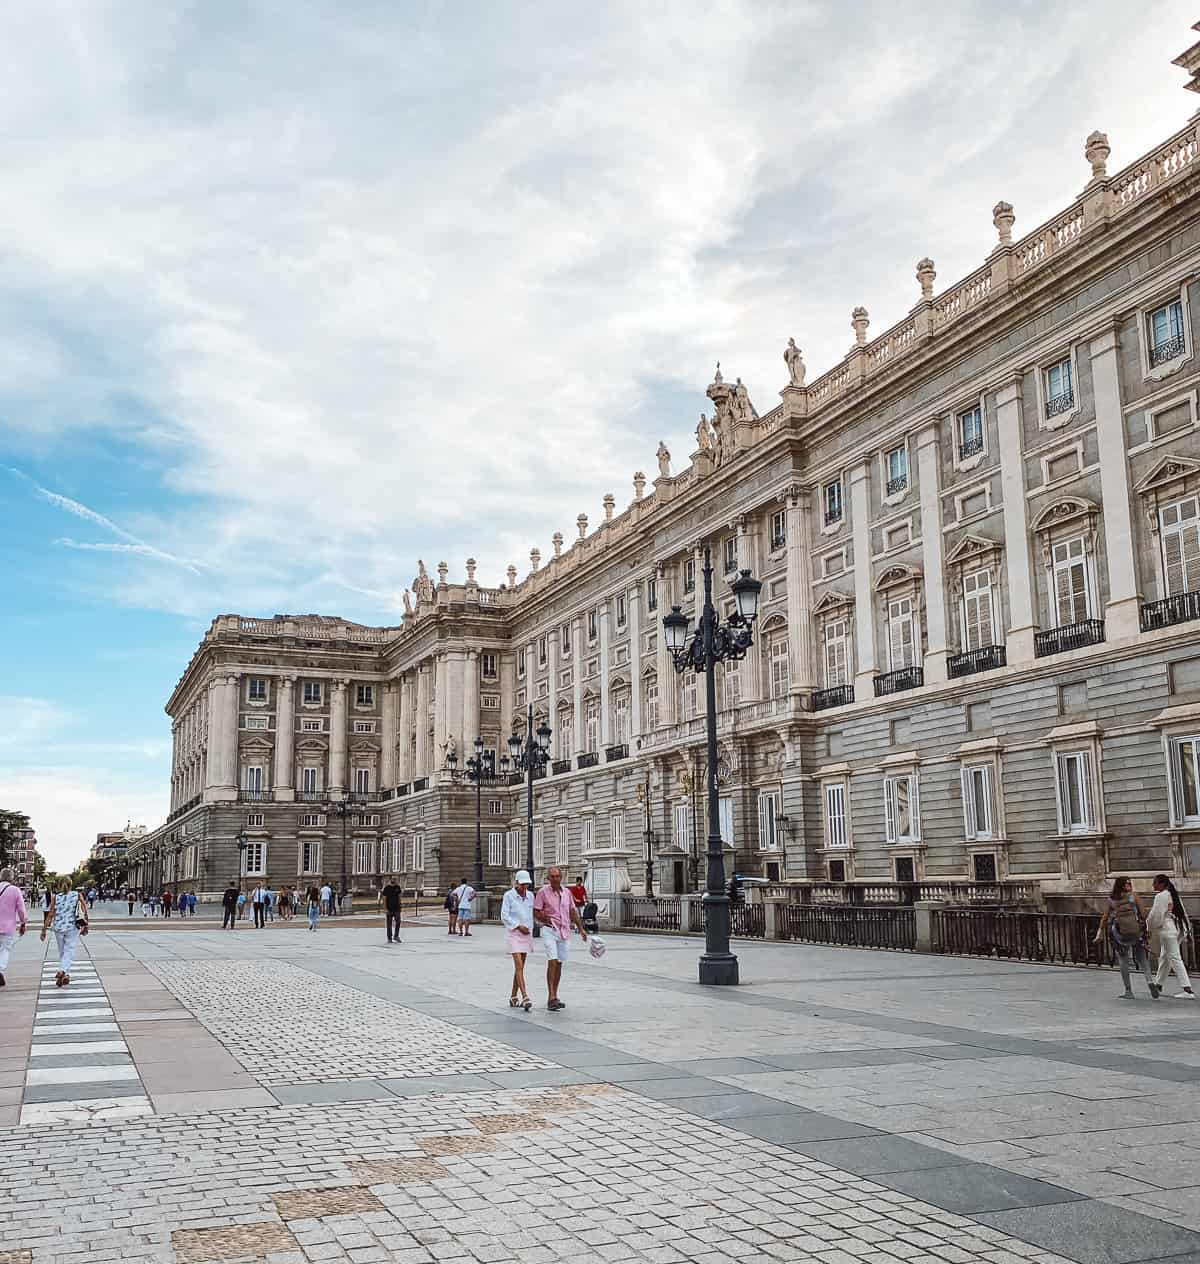 The palacio de real in Madrid Spain